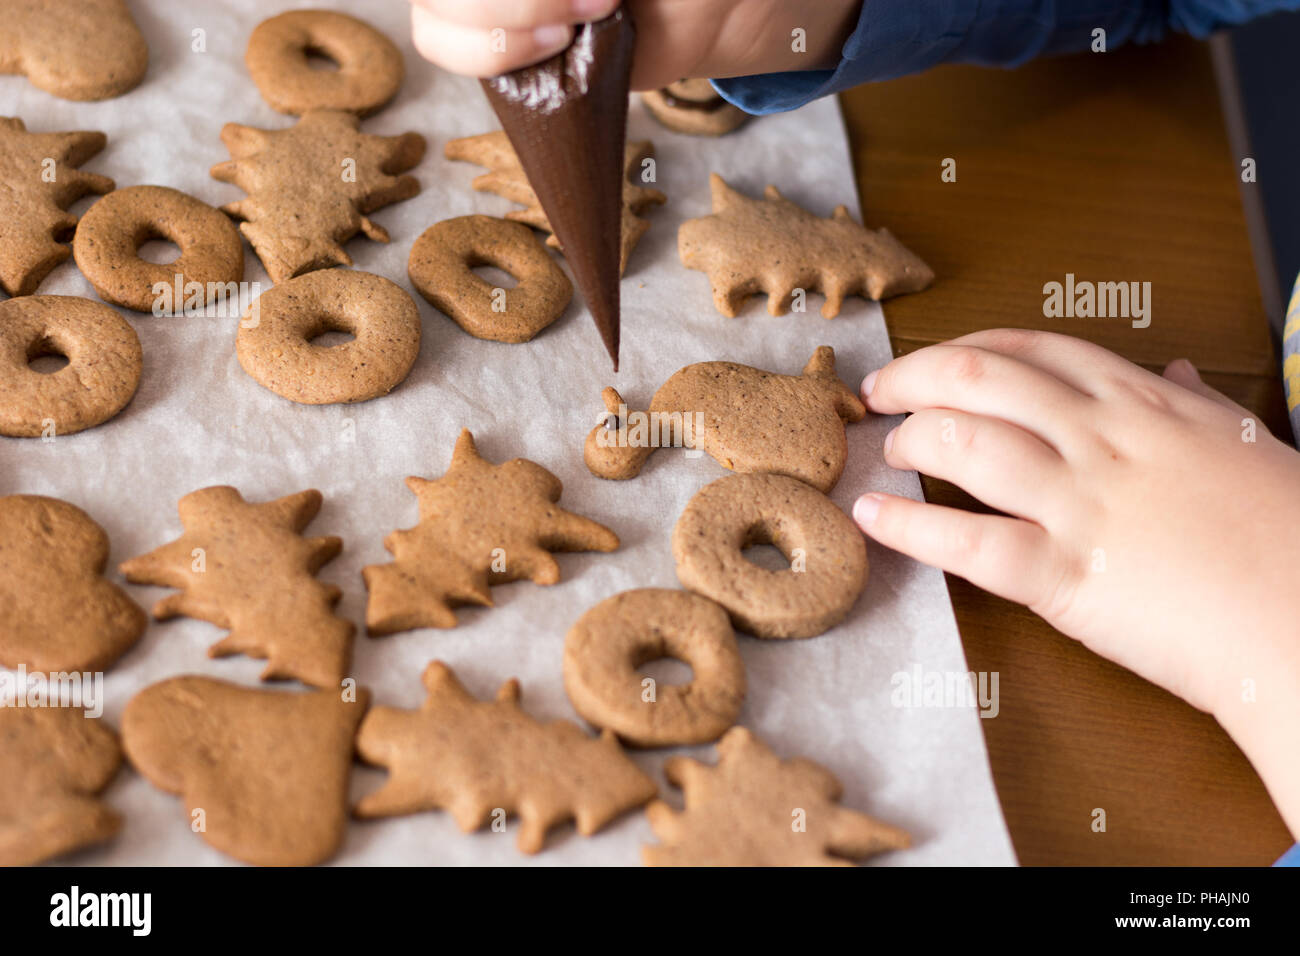 Junge dekorieren Lebkuchen Kekse mit Schokolade Stockfoto